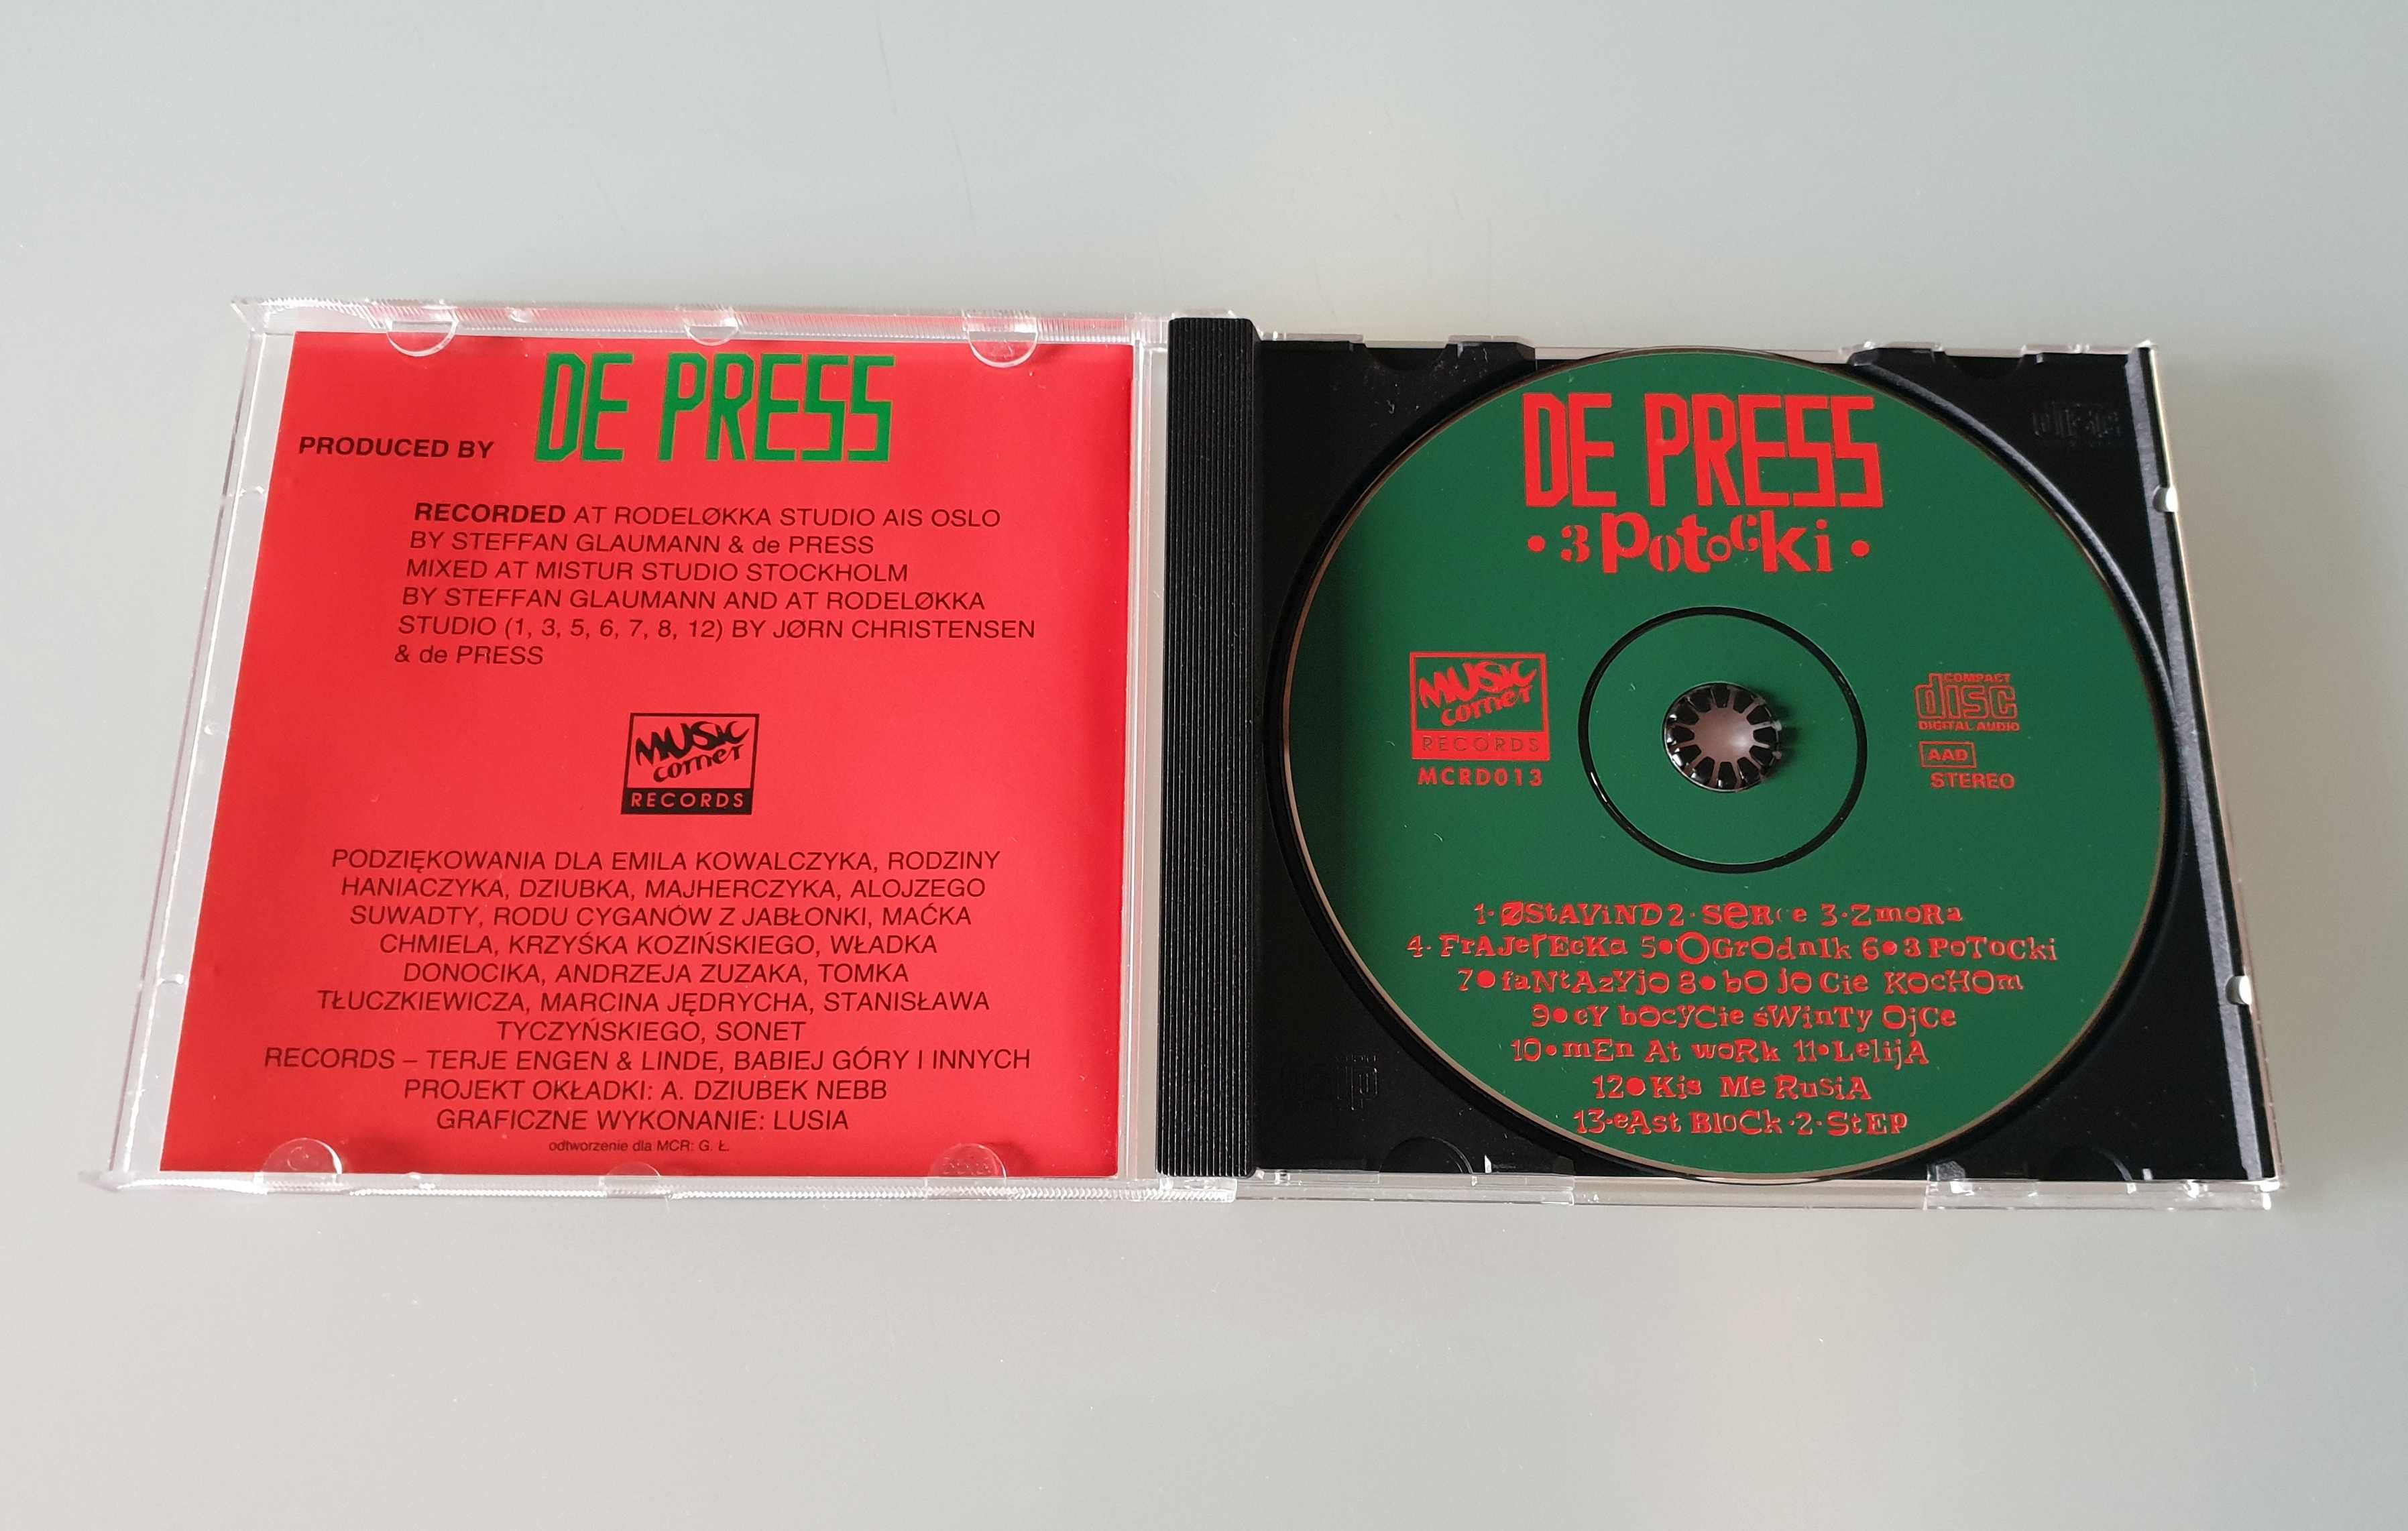 Płyta CD / album De Press - 3 Potocki